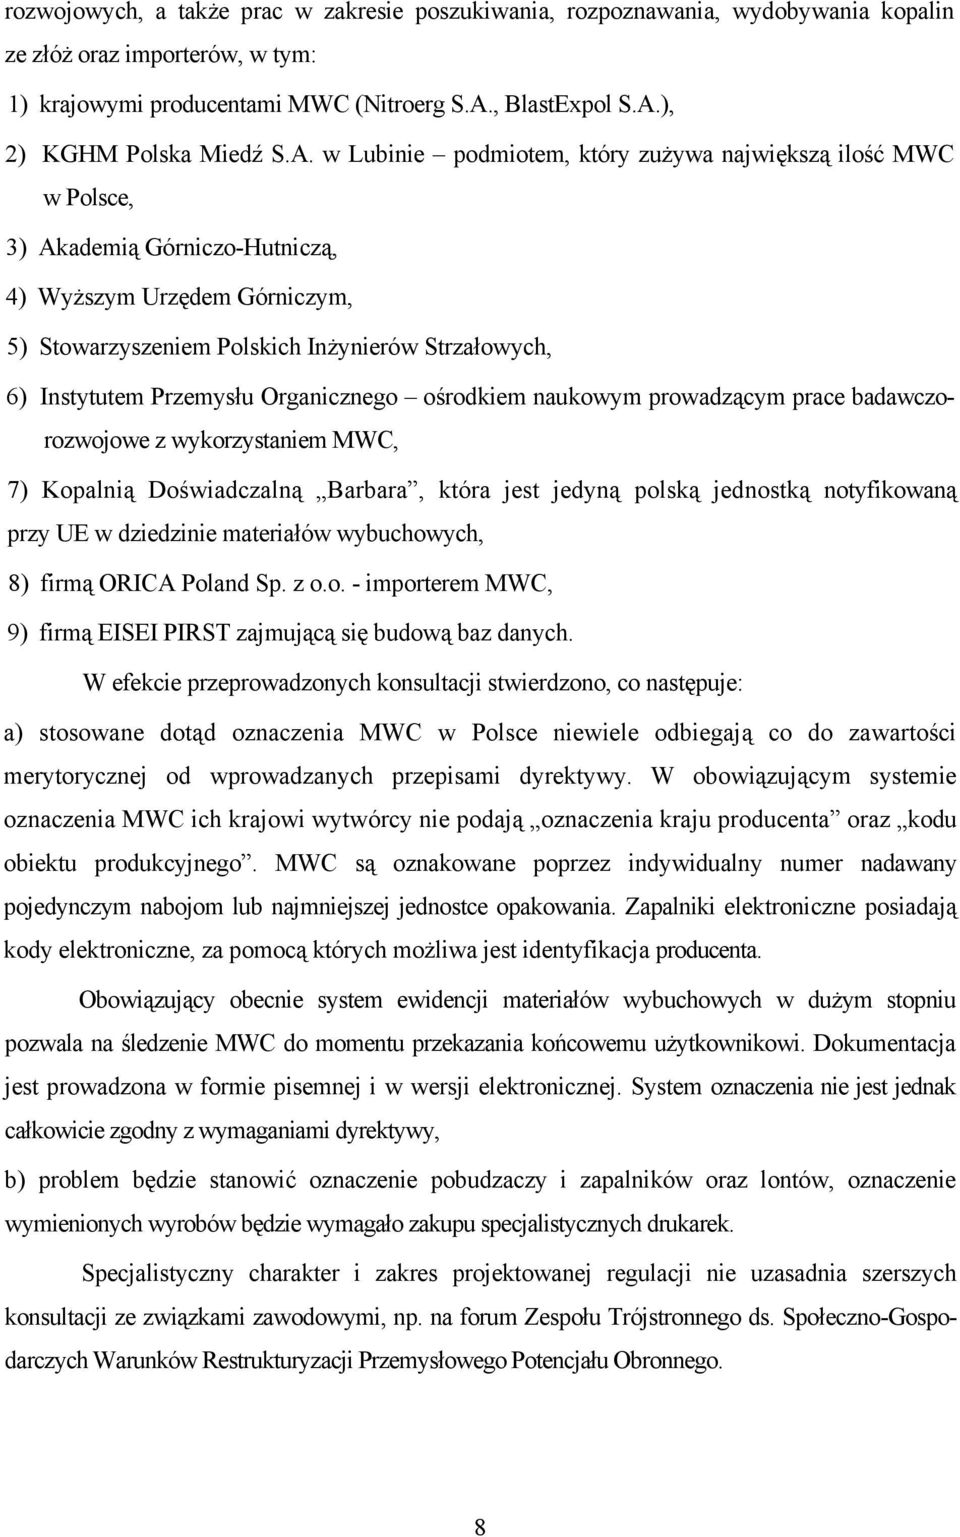 Przemysłu Organicznego ośrodkiem naukowym prowadzącym prace badawczorozwojowe z wykorzystaniem MWC, 7) Kopalnią Doświadczalną Barbara, która jest jedyną polską jednostką notyfikowaną przy UE w